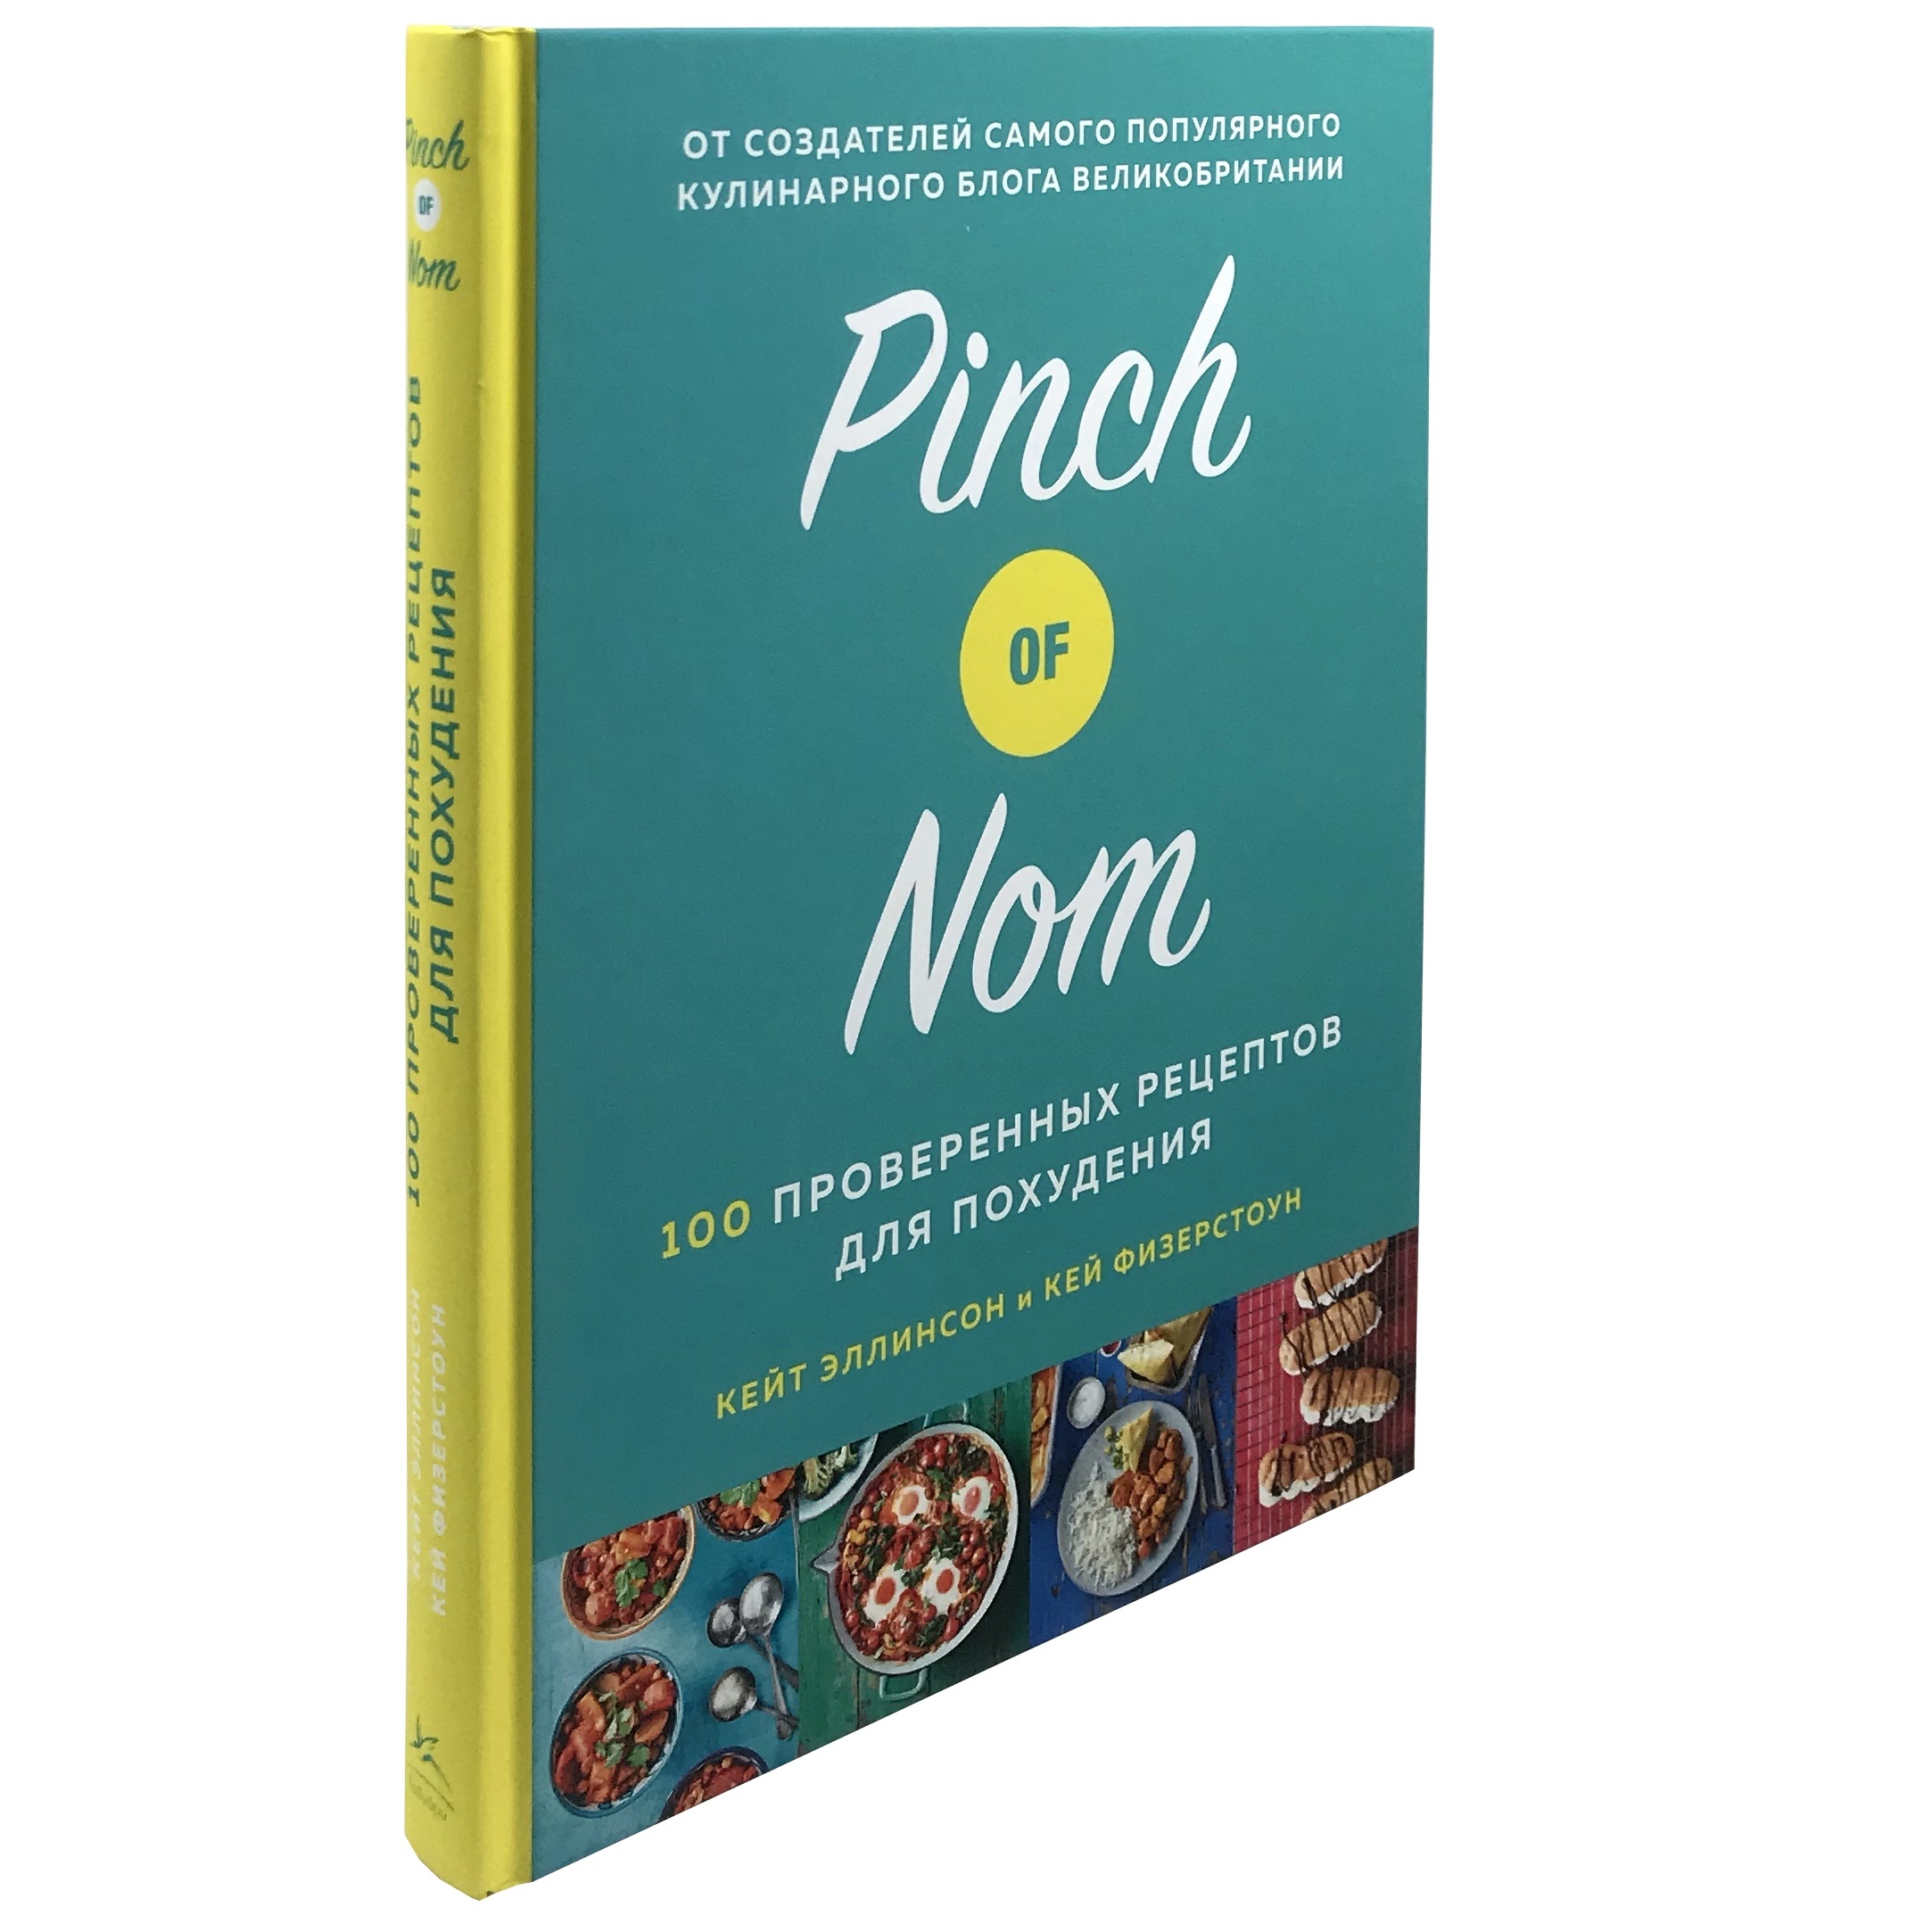 Pinch of Nom. 100 проверенных рецептов для похудения  . Автор — Кейт Эллинсон, Кей Физерстоун. 